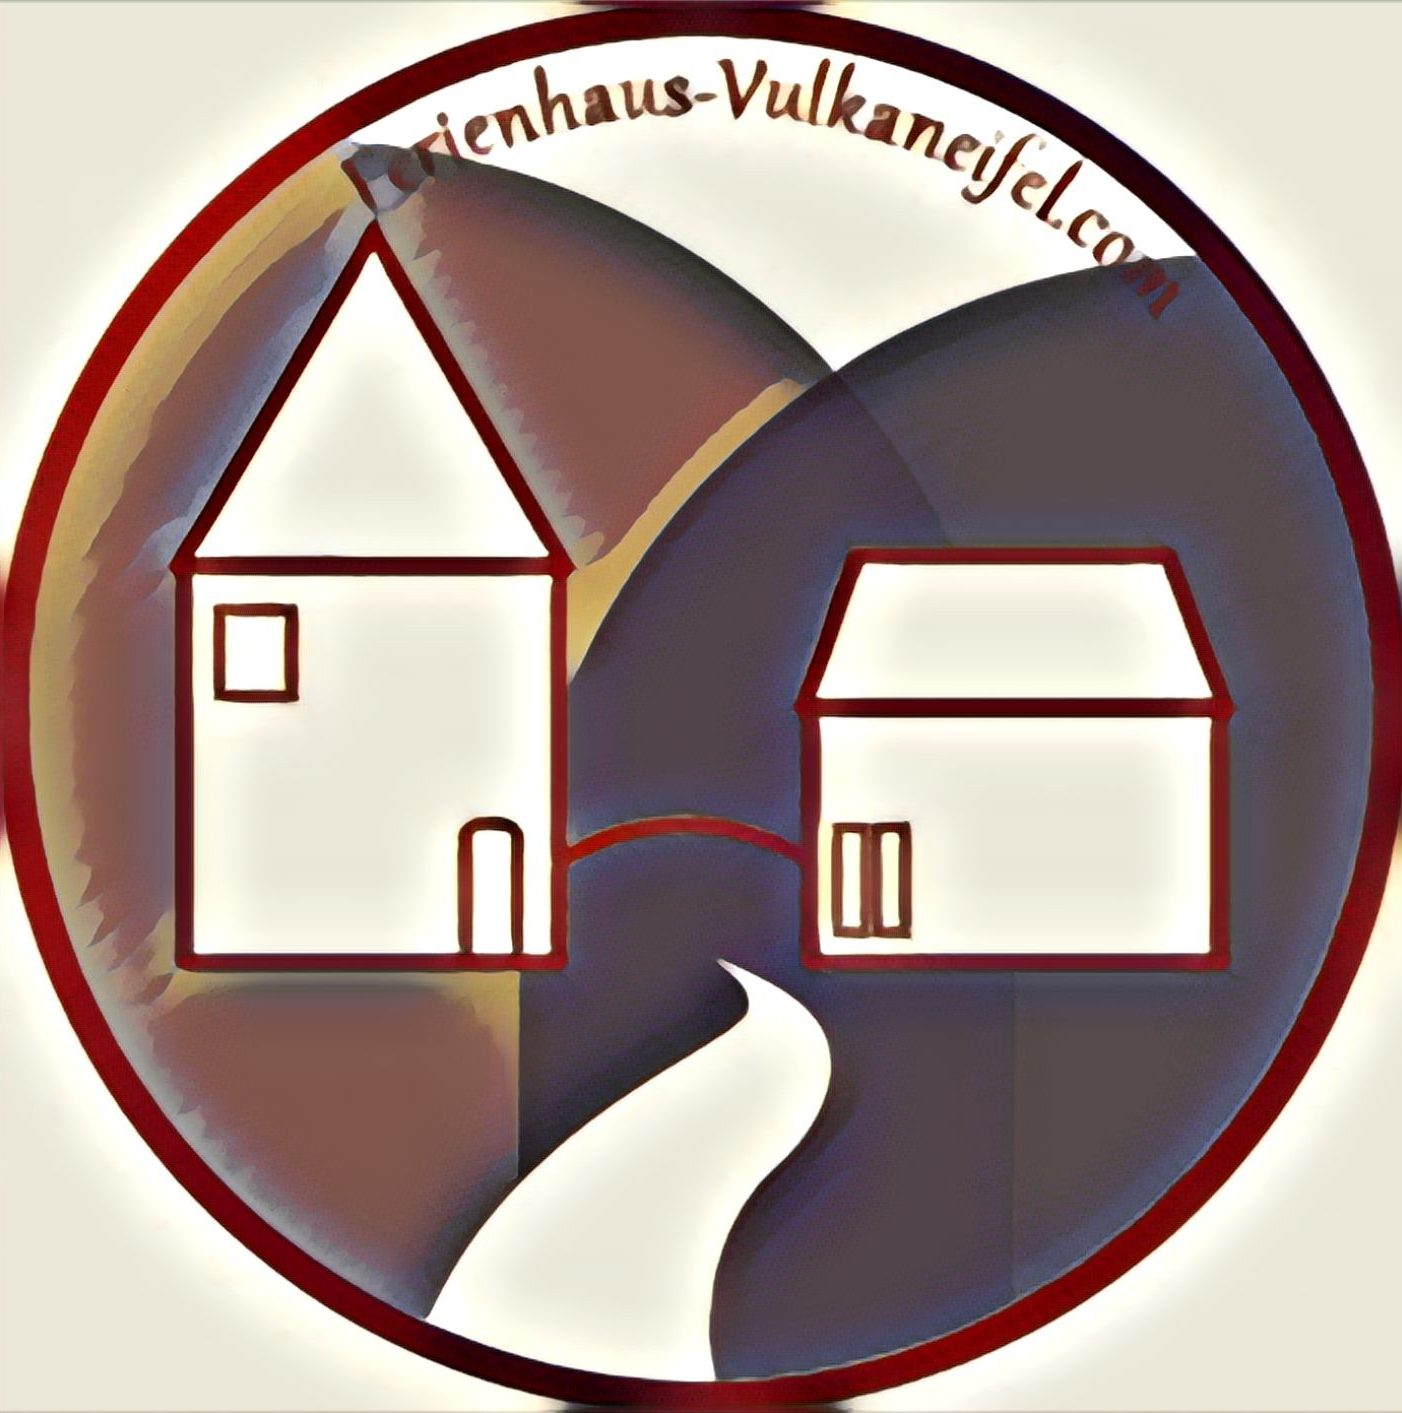 Ferienhaus-Vulkaneifel